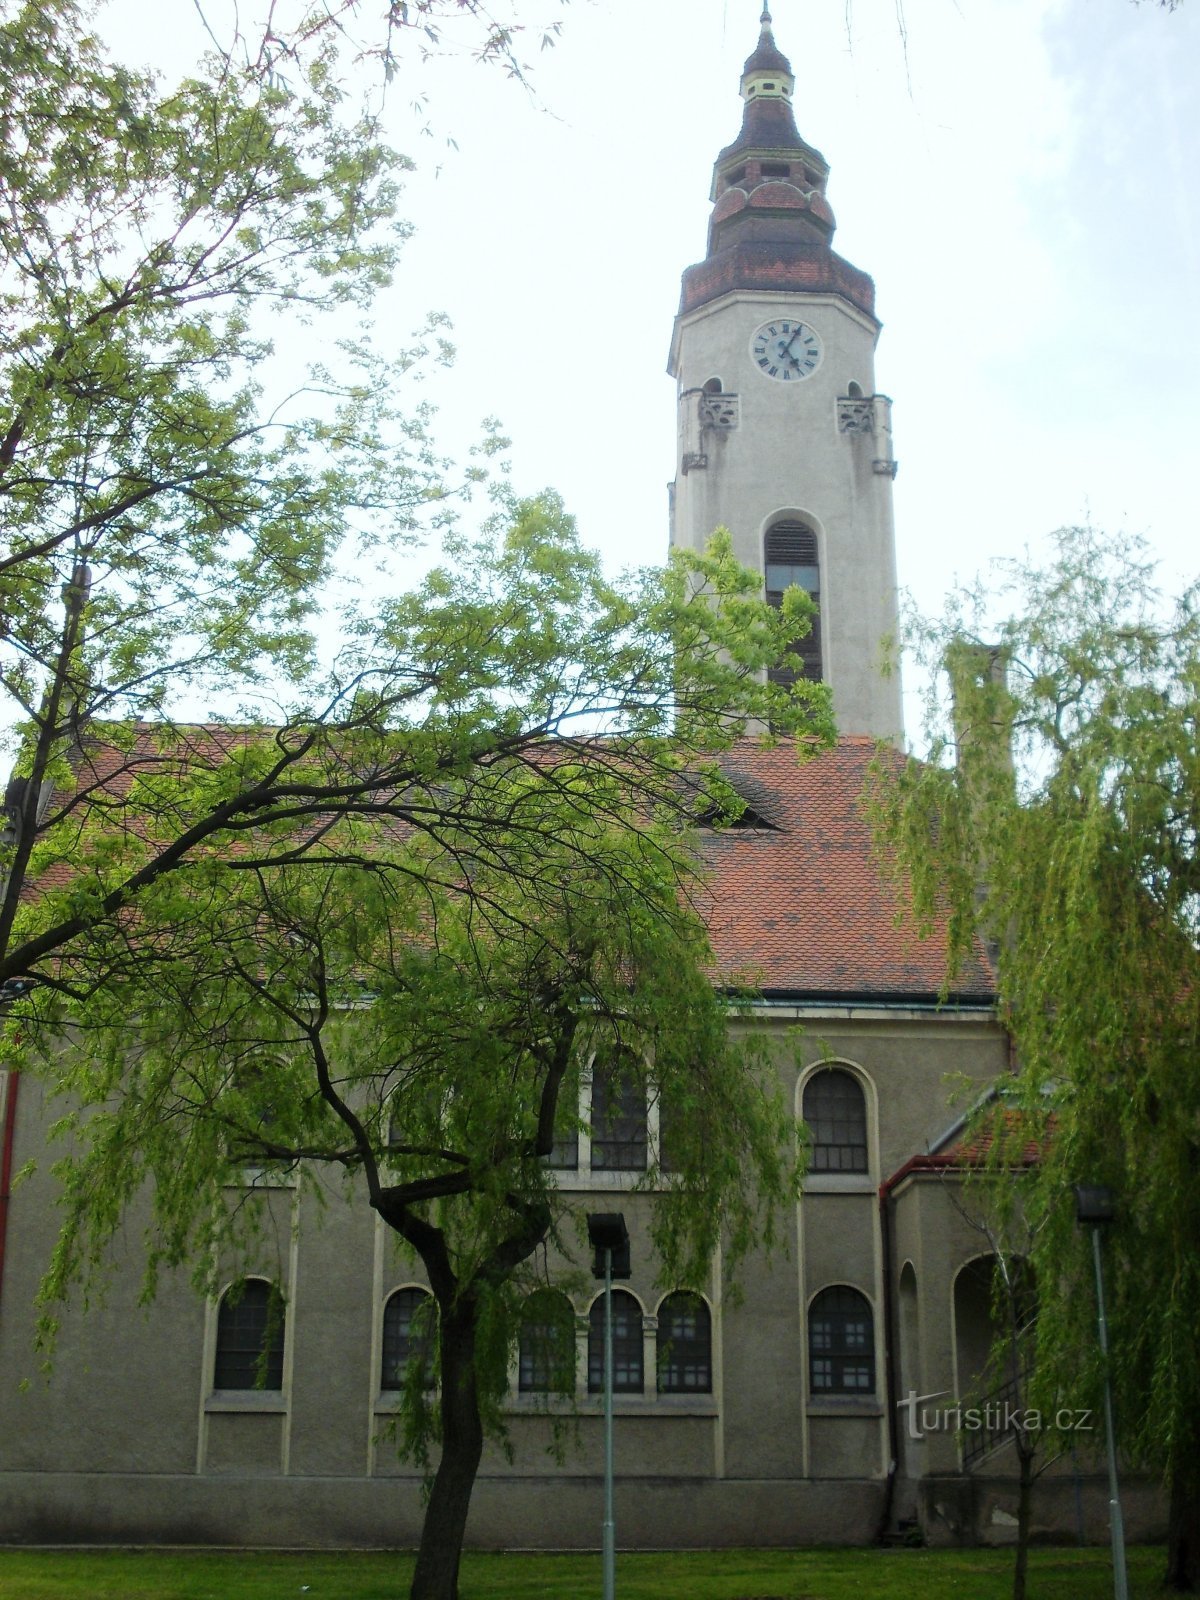 kirkko, jonka torni on lähes 42 metriä korkea